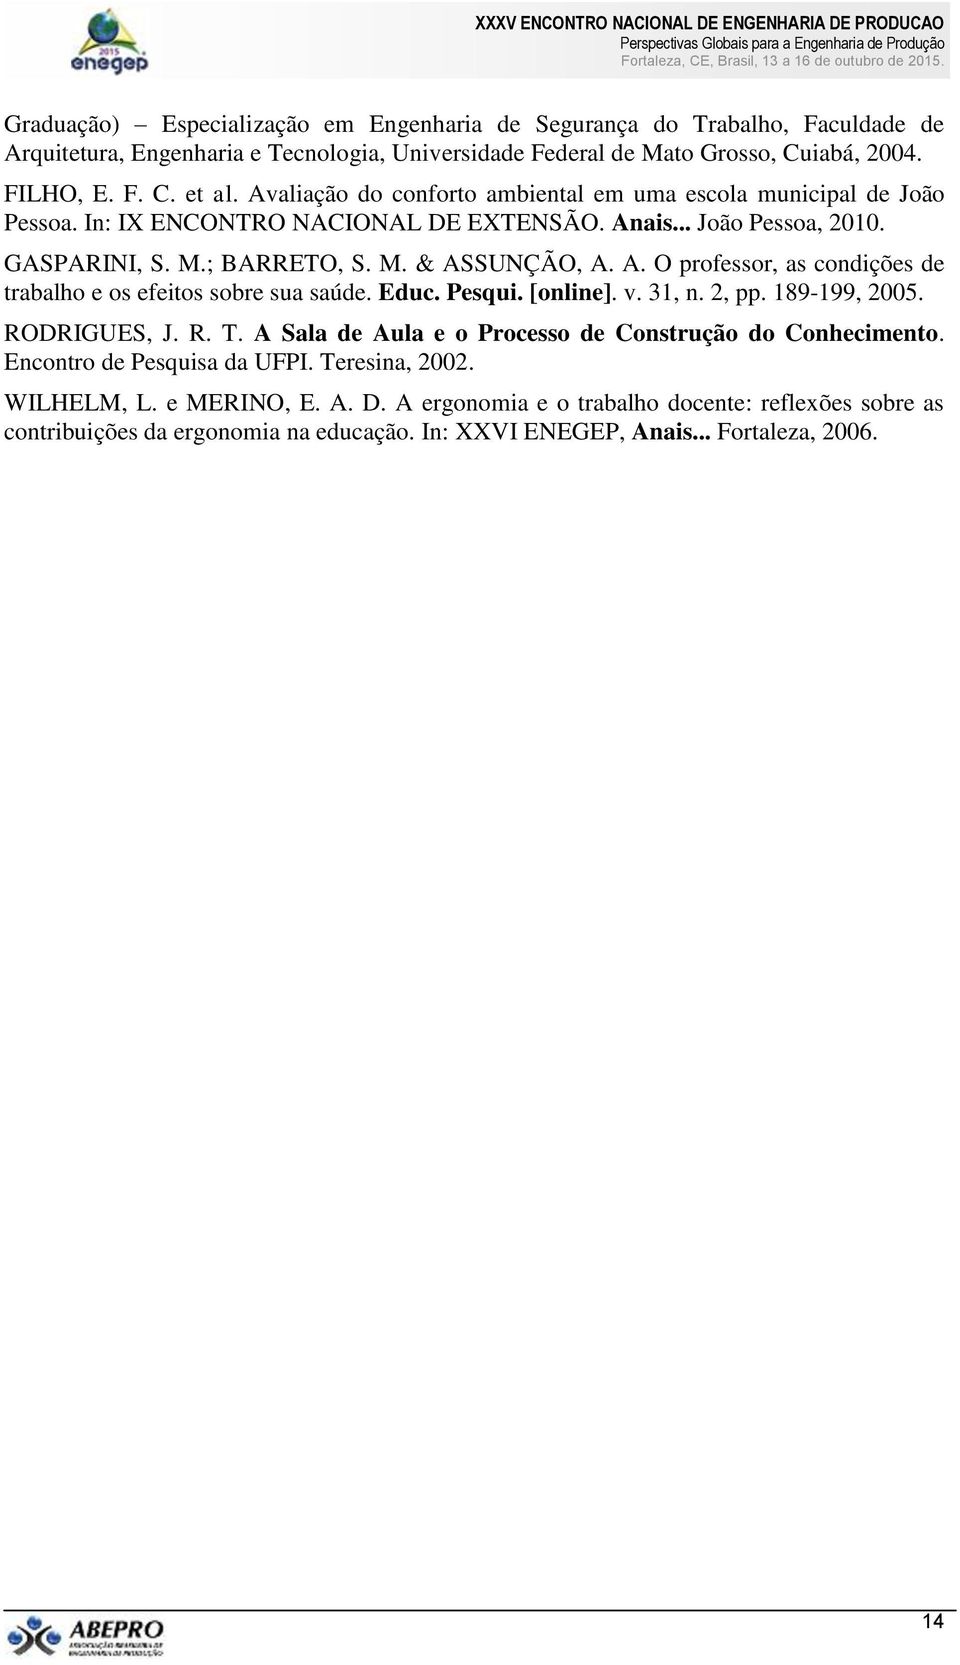 Educ. Pesqui. [online]. v. 31, n. 2, pp. 189-199, 2005. RODRIGUES, J. R. T. A Sala de Aula e o Processo de Construção do Conhecimento. Encontro de Pesquisa da UFPI. Teresina, 2002. WILHELM, L.